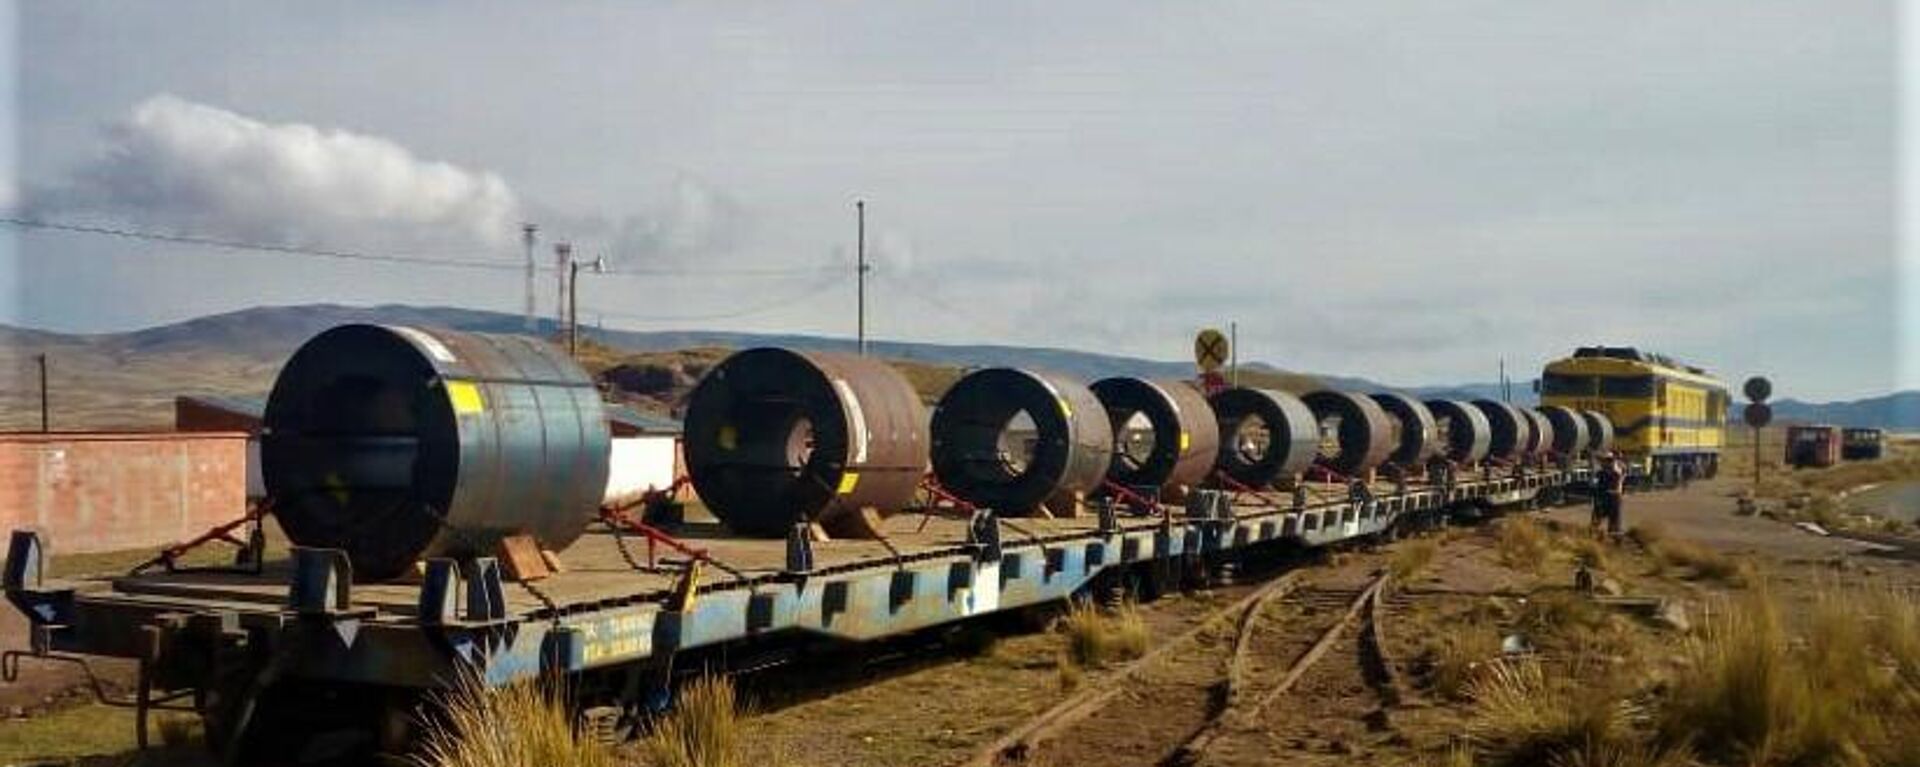 El ferrocarril Arica-La Paz que uniría Chile con Bolivia - Sputnik Mundo, 1920, 15.05.2021